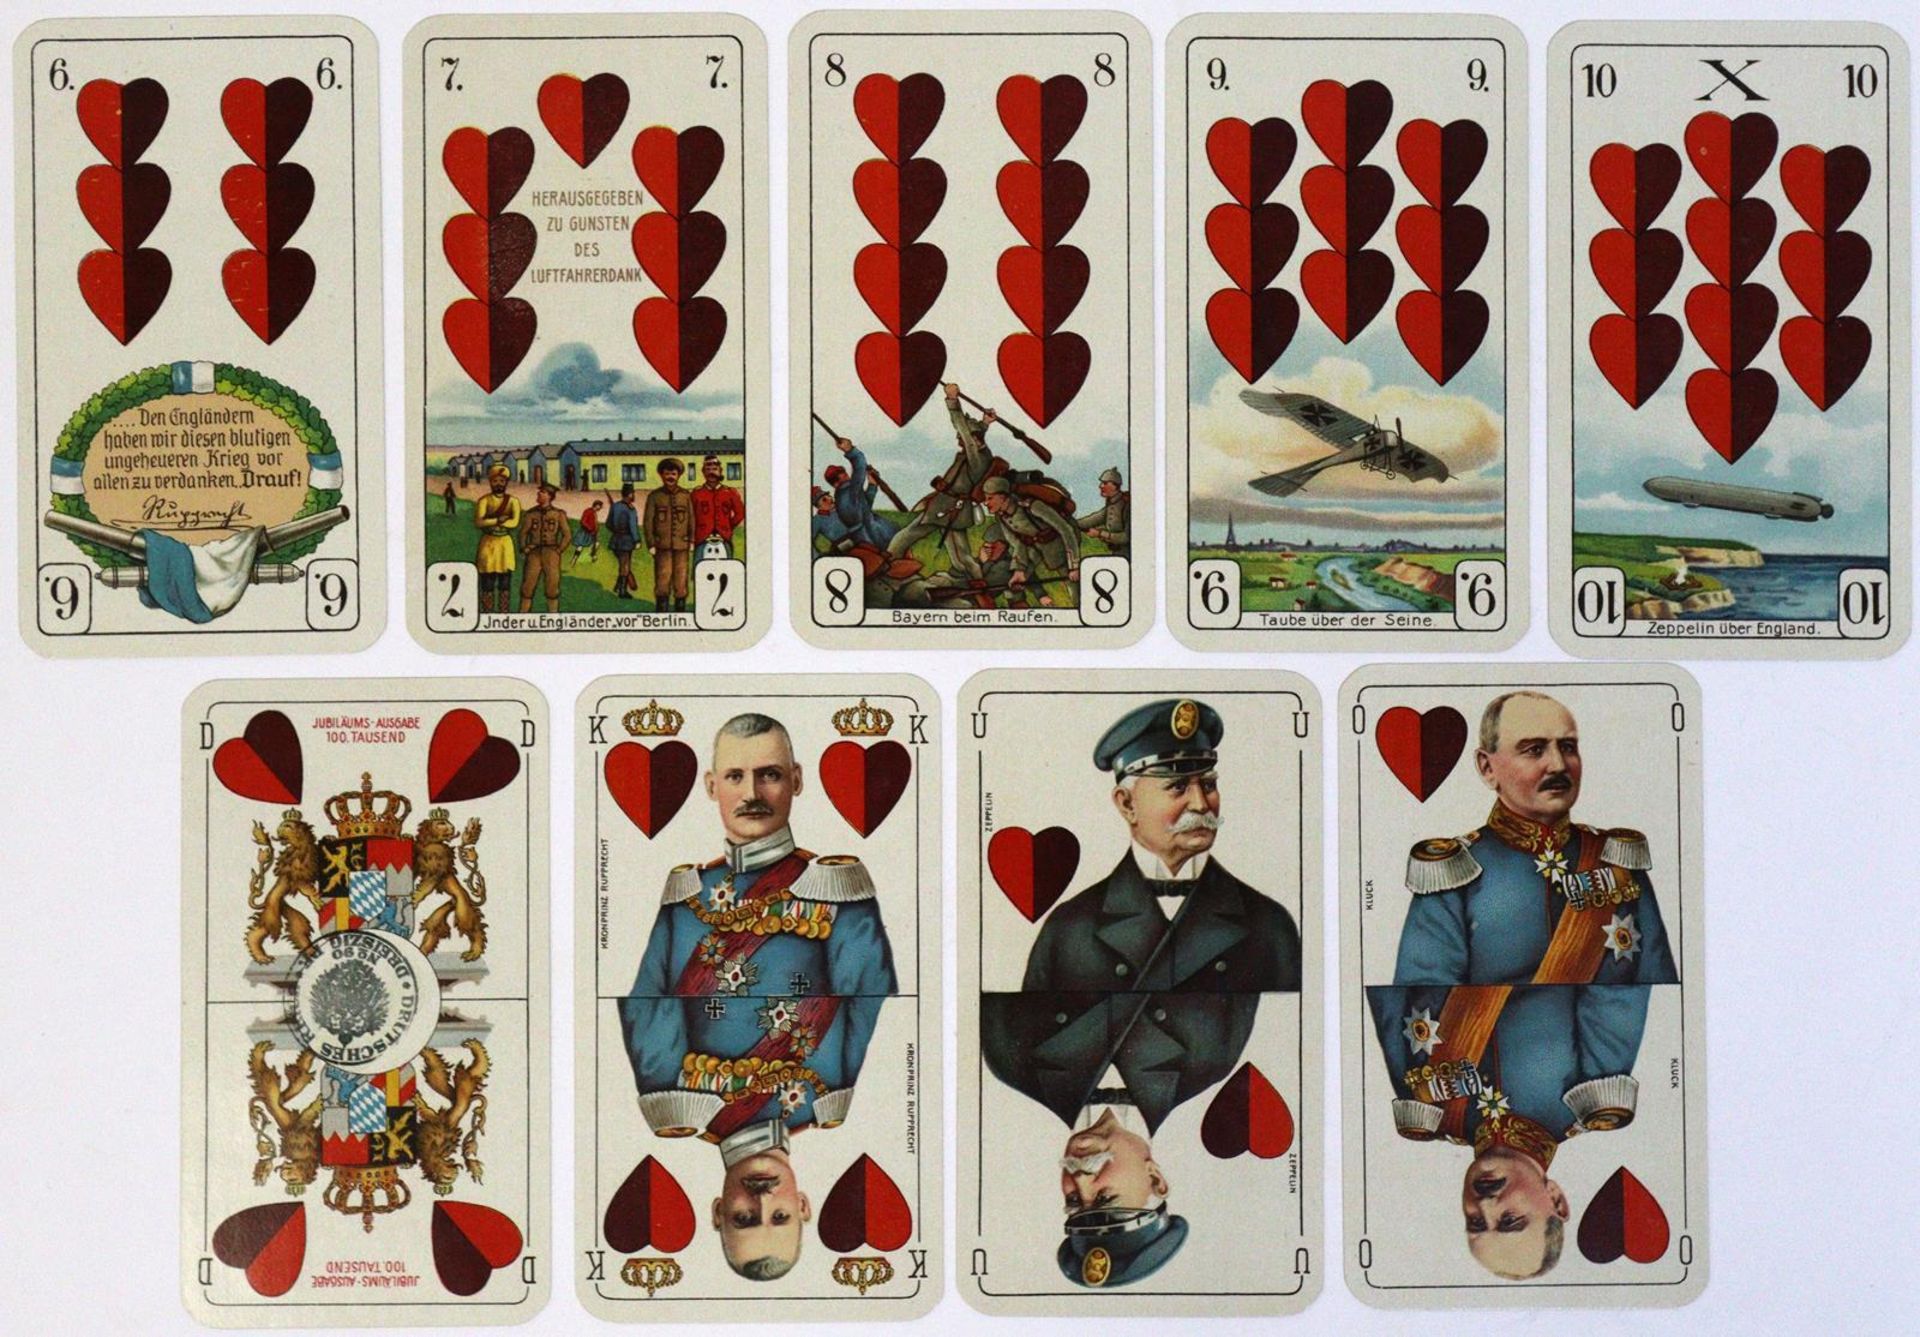 Deutsche Kriegs-Spielkarte. - Image 3 of 7